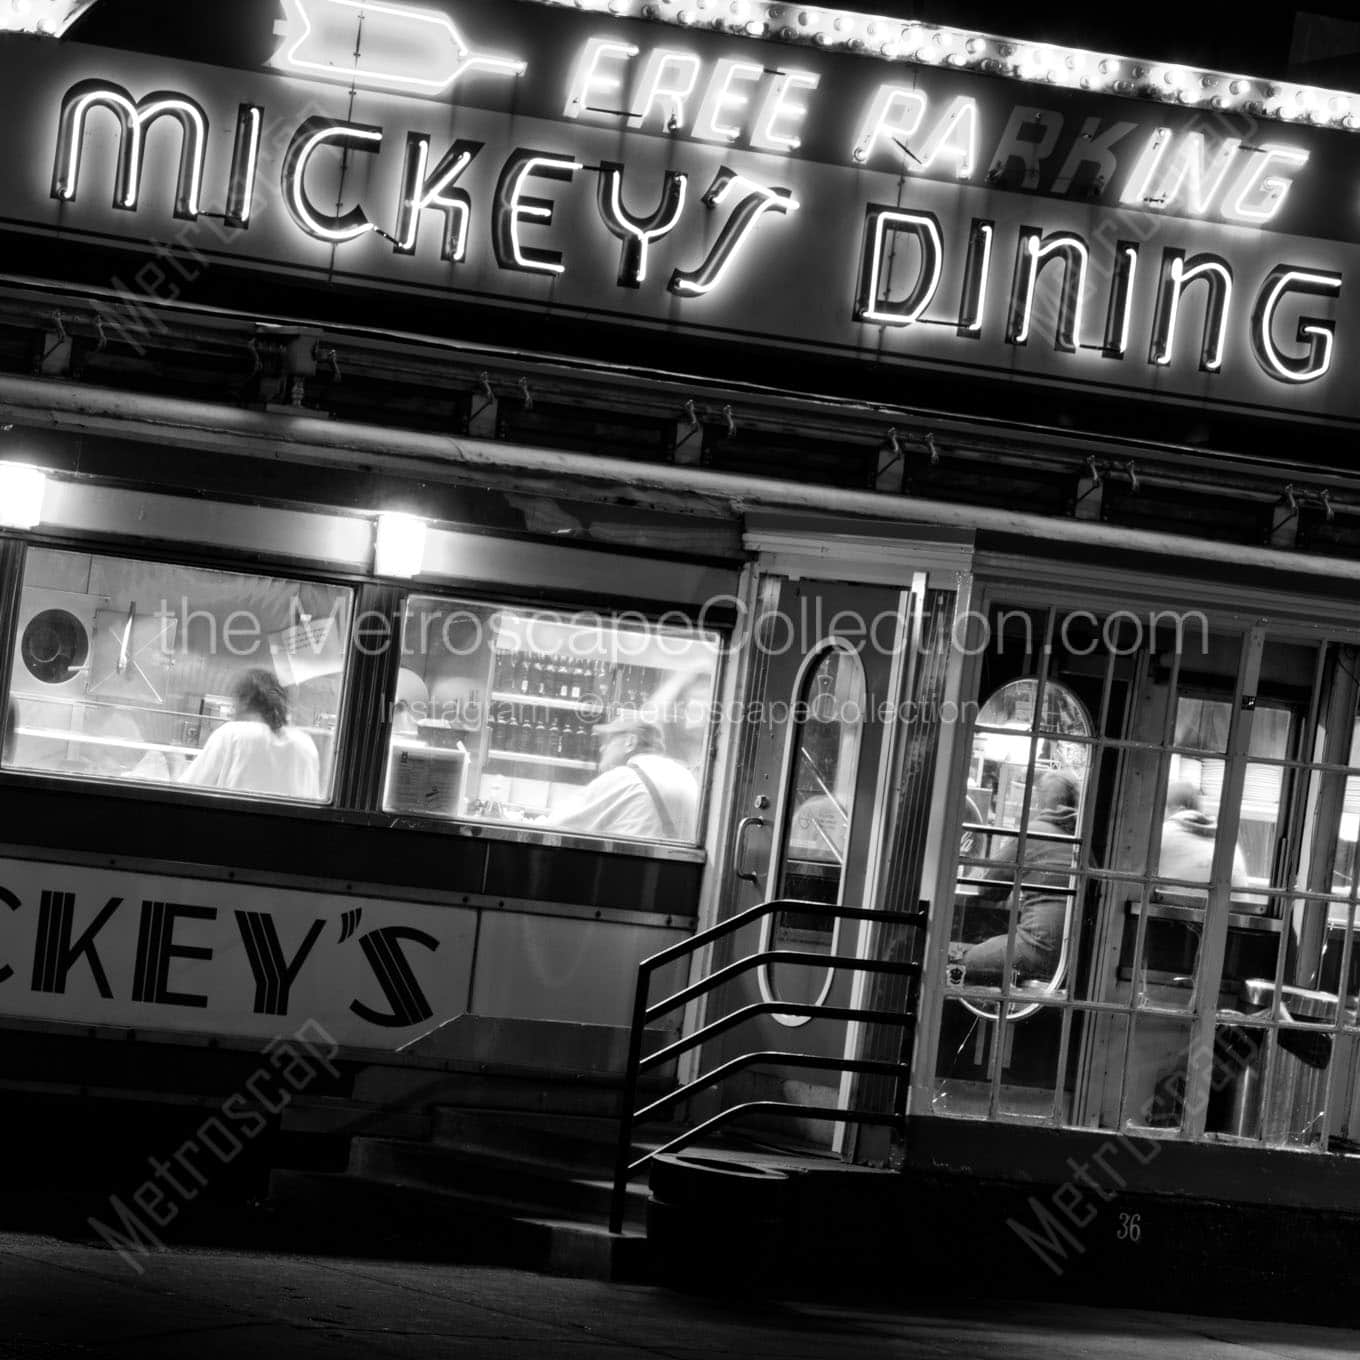 mickeys dining car at night Black & White Office Art